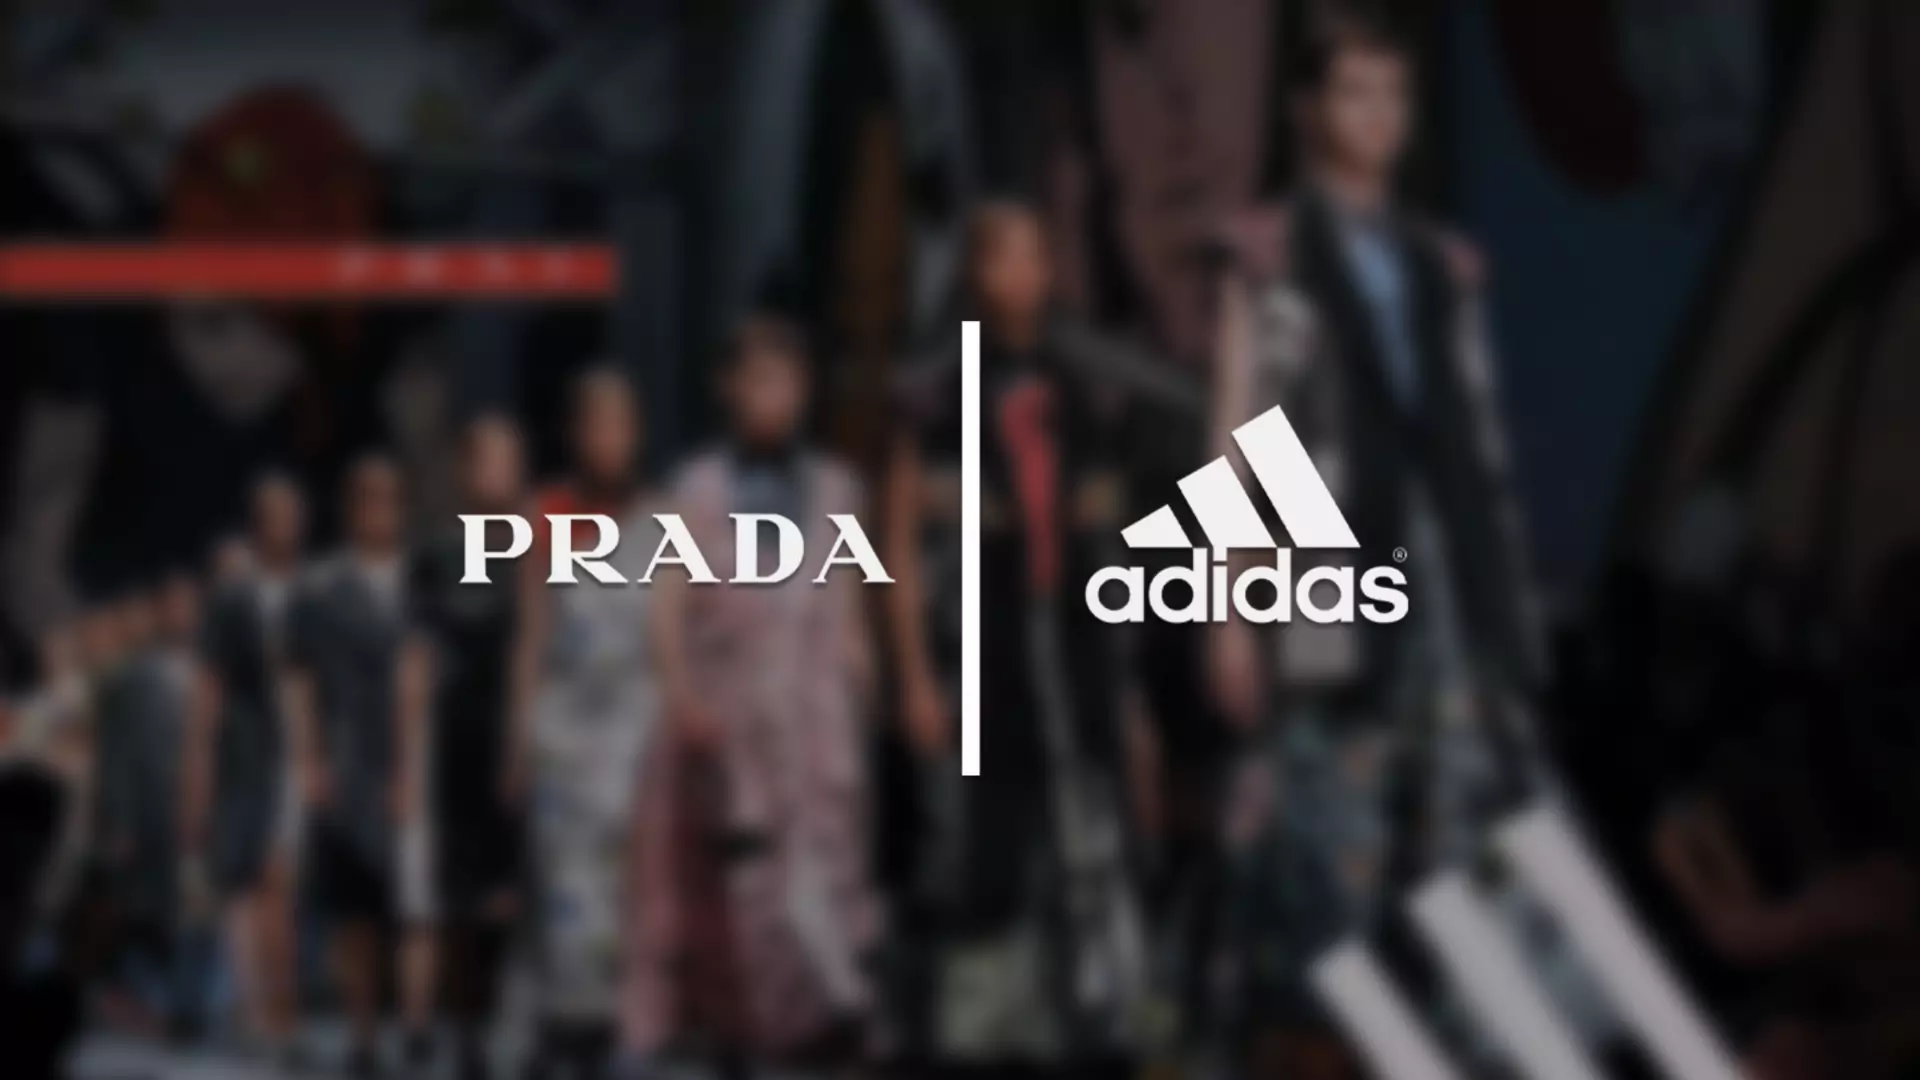 Wygląda na to, że adidas i Prada szykują wspólny projekt. Znamy pierwsze szczegóły